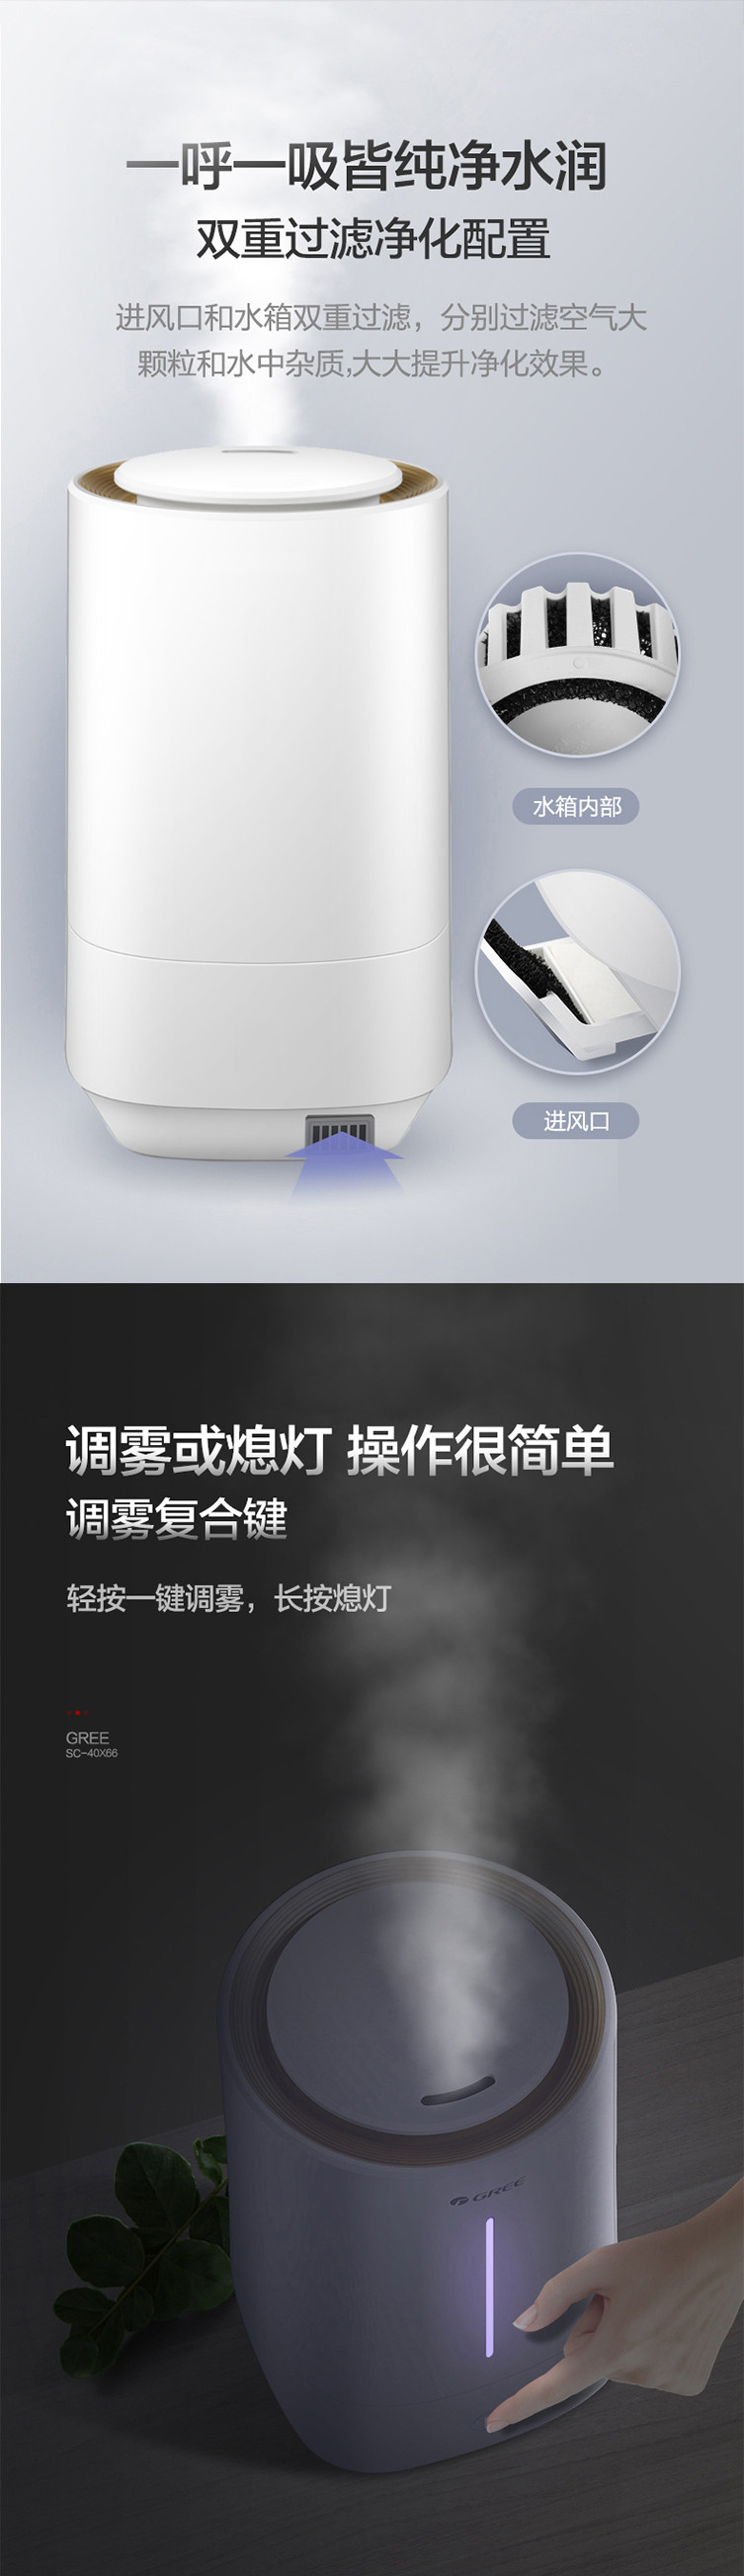 格力超声波加湿器 4L水箱 细腻水雾 舒适滋润 SC-40X66 白色